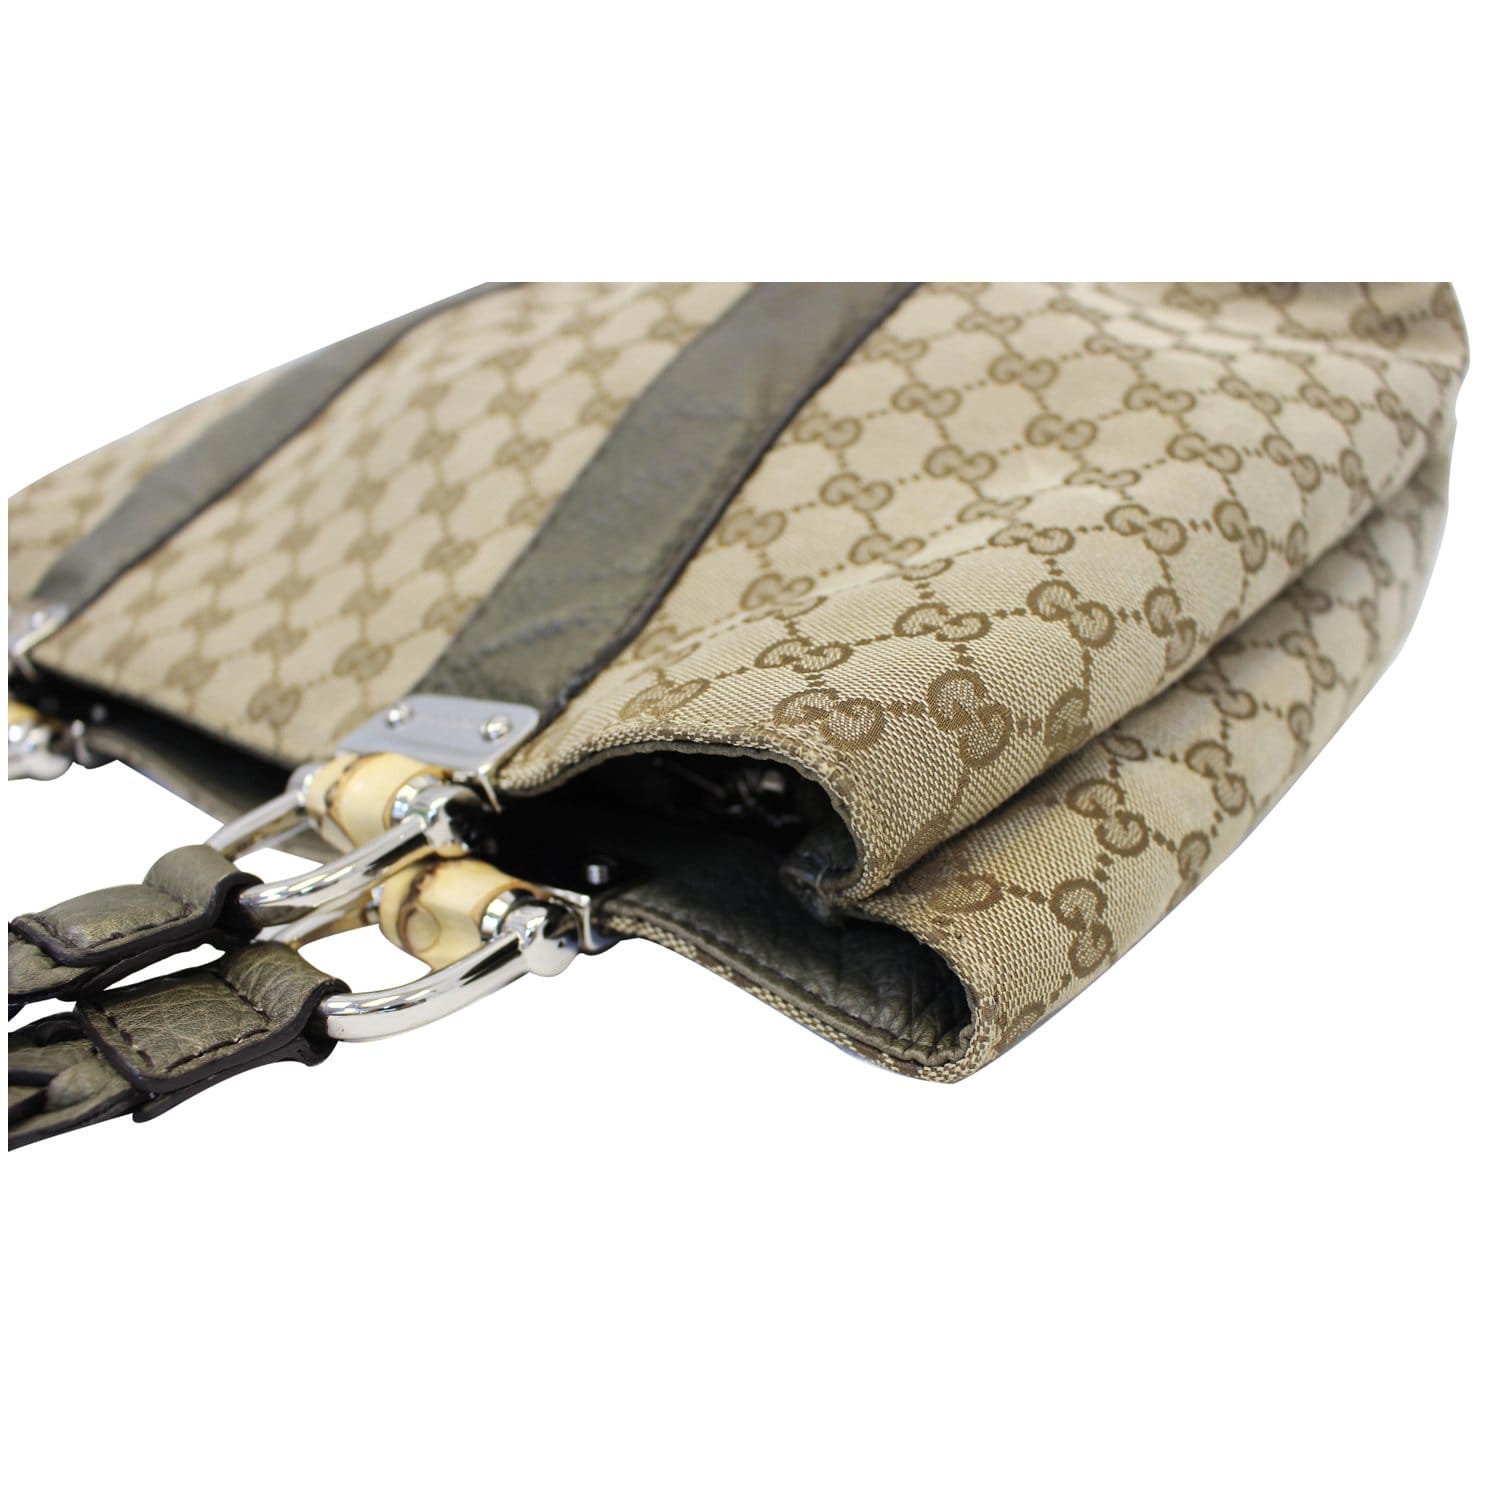 Gucci Bamboo Canvas Handbag